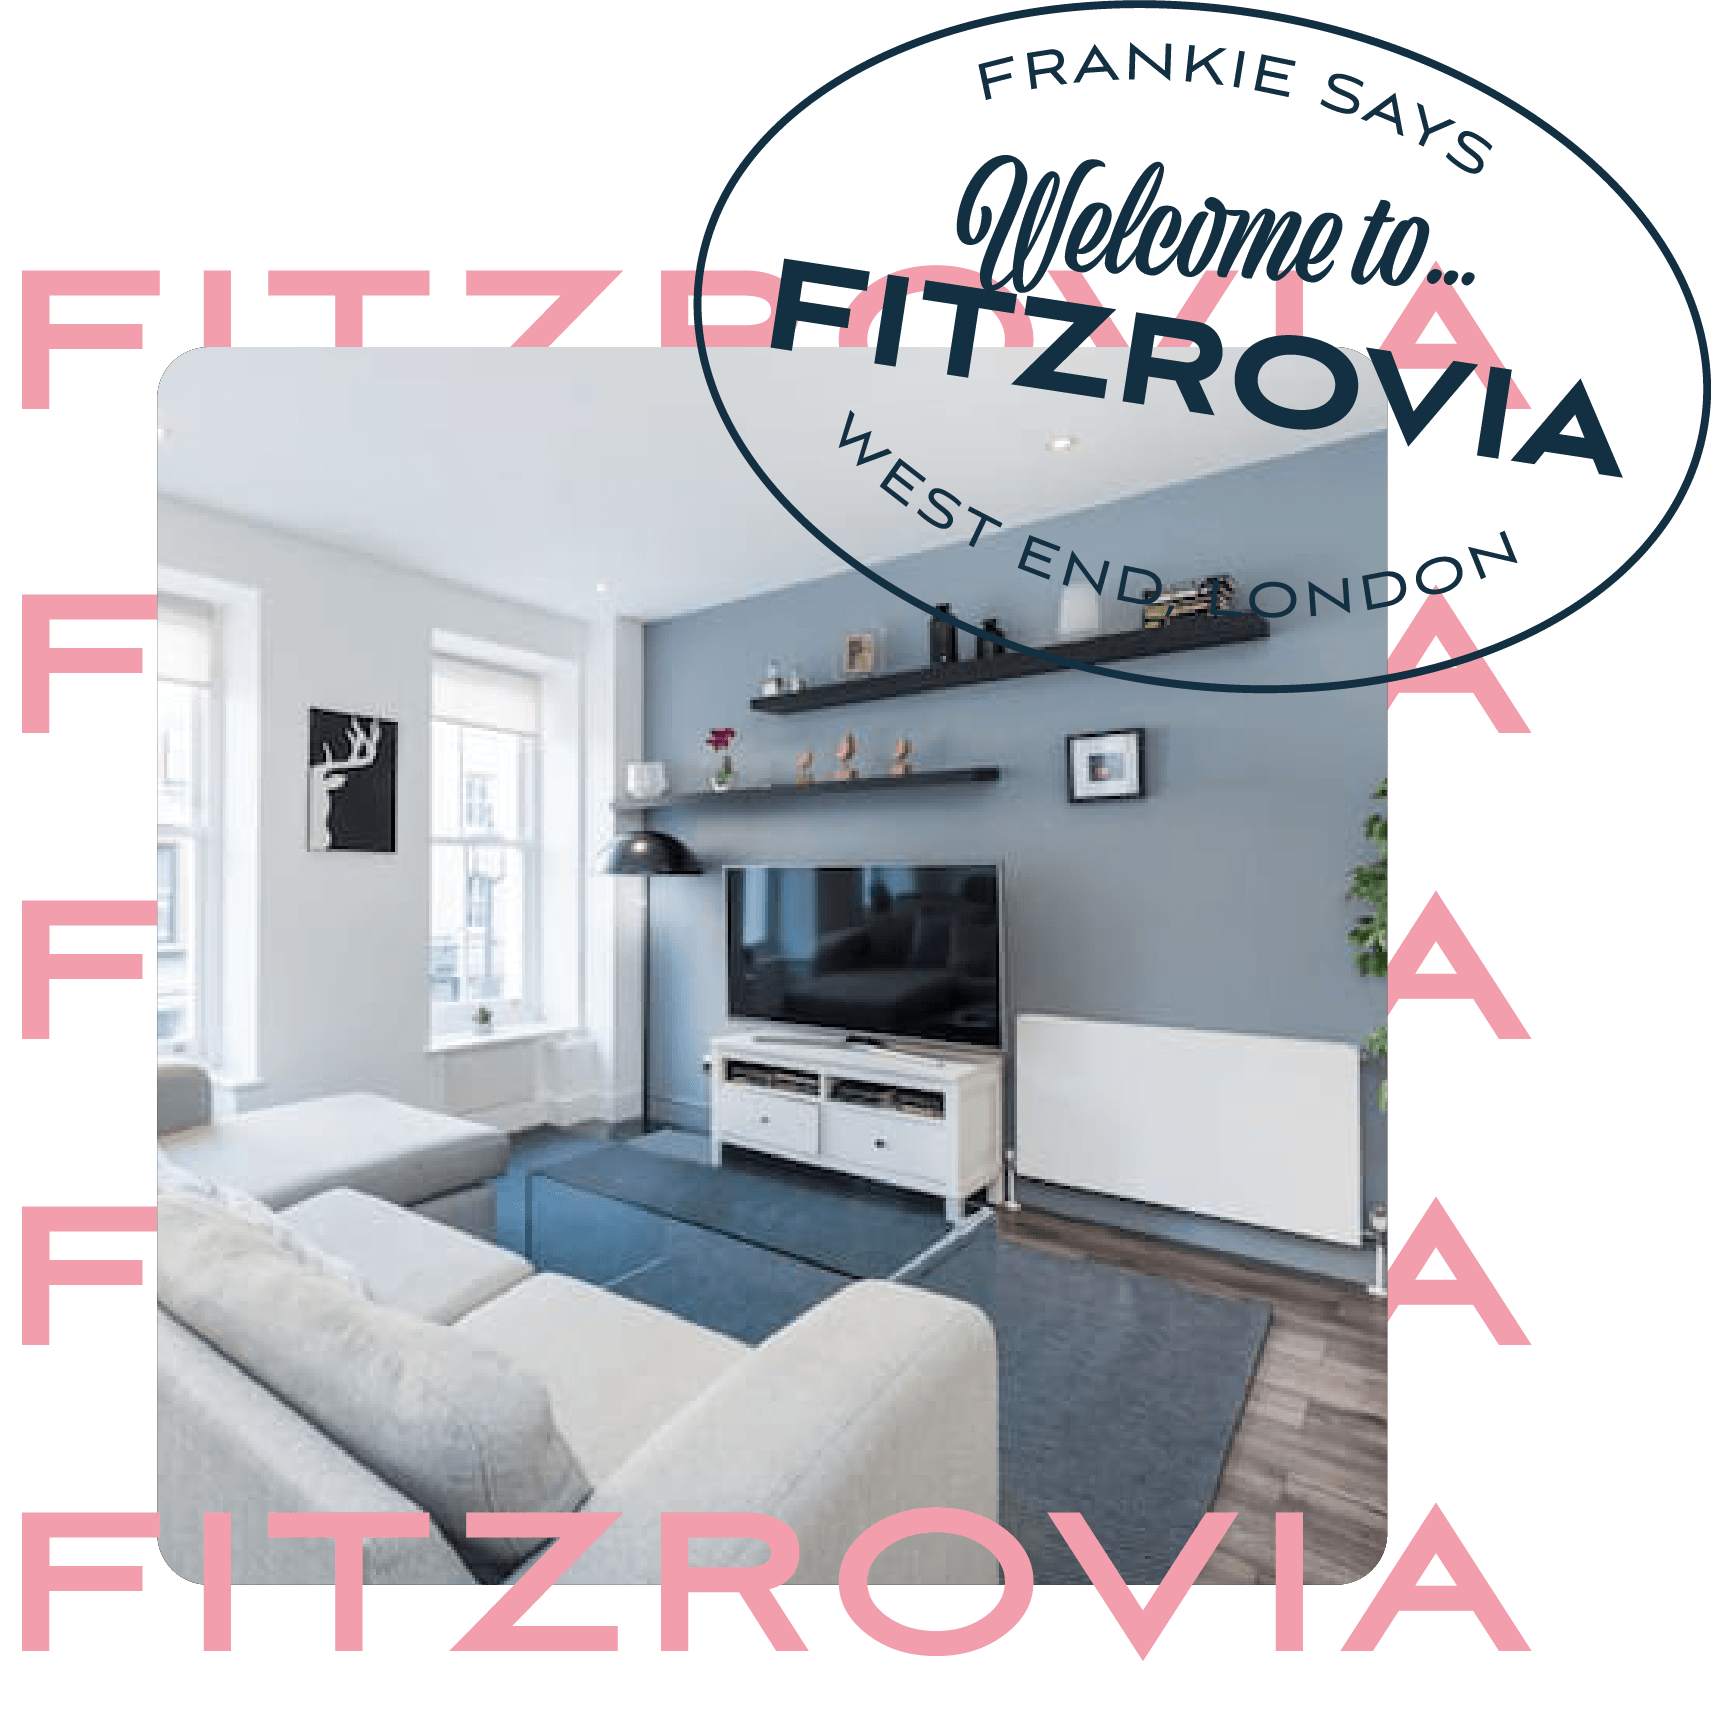 Fitzrovia